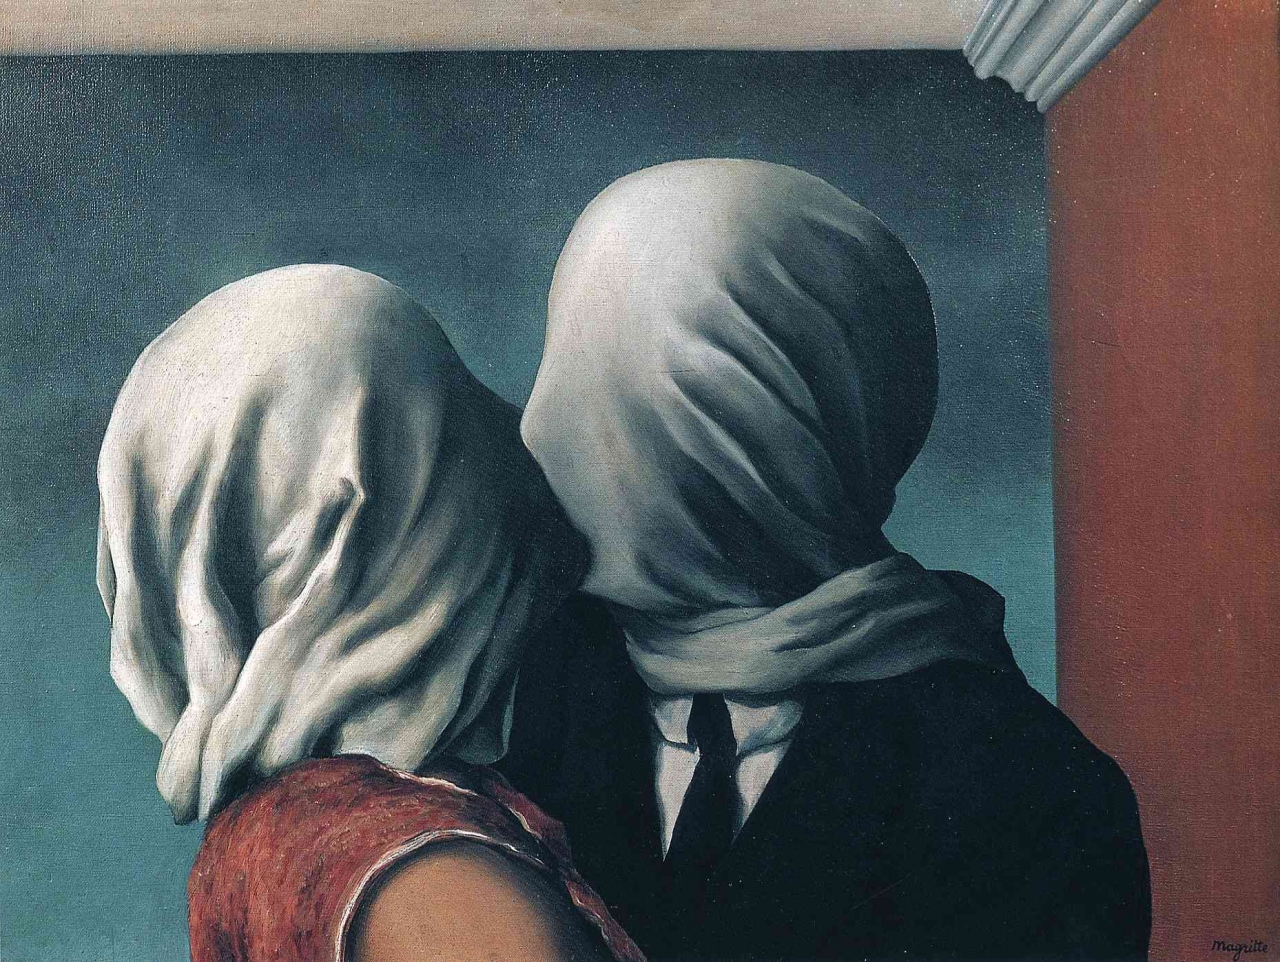 이런 상황이 올지도 몰른다. Rene Magritte, 'The lovers', 1928, oil on canvas, 54 x 73.4 cm, Museum of Modern Art (MoMA), New York City.